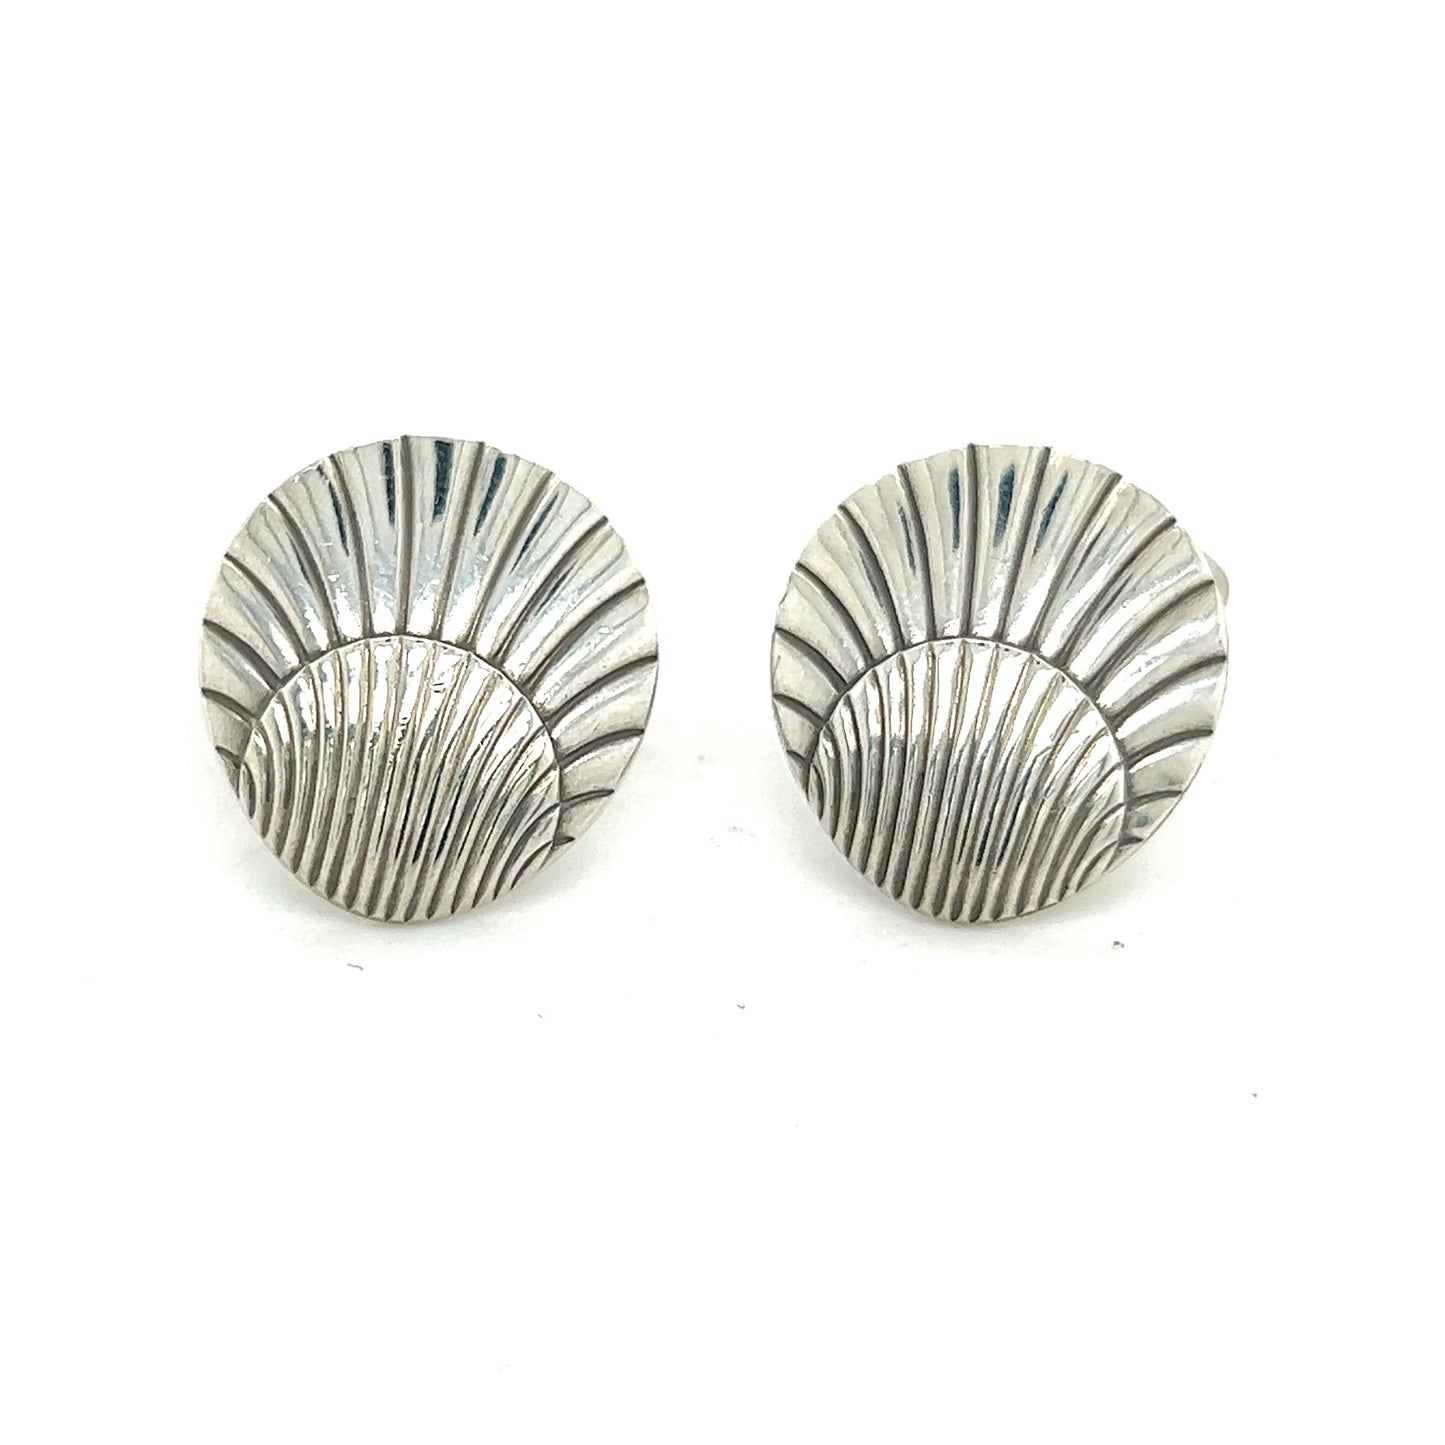 Georg Jensen Authentic Estate Seashell Cufflinks Silver GJ14 - Certified Fine Jewelry